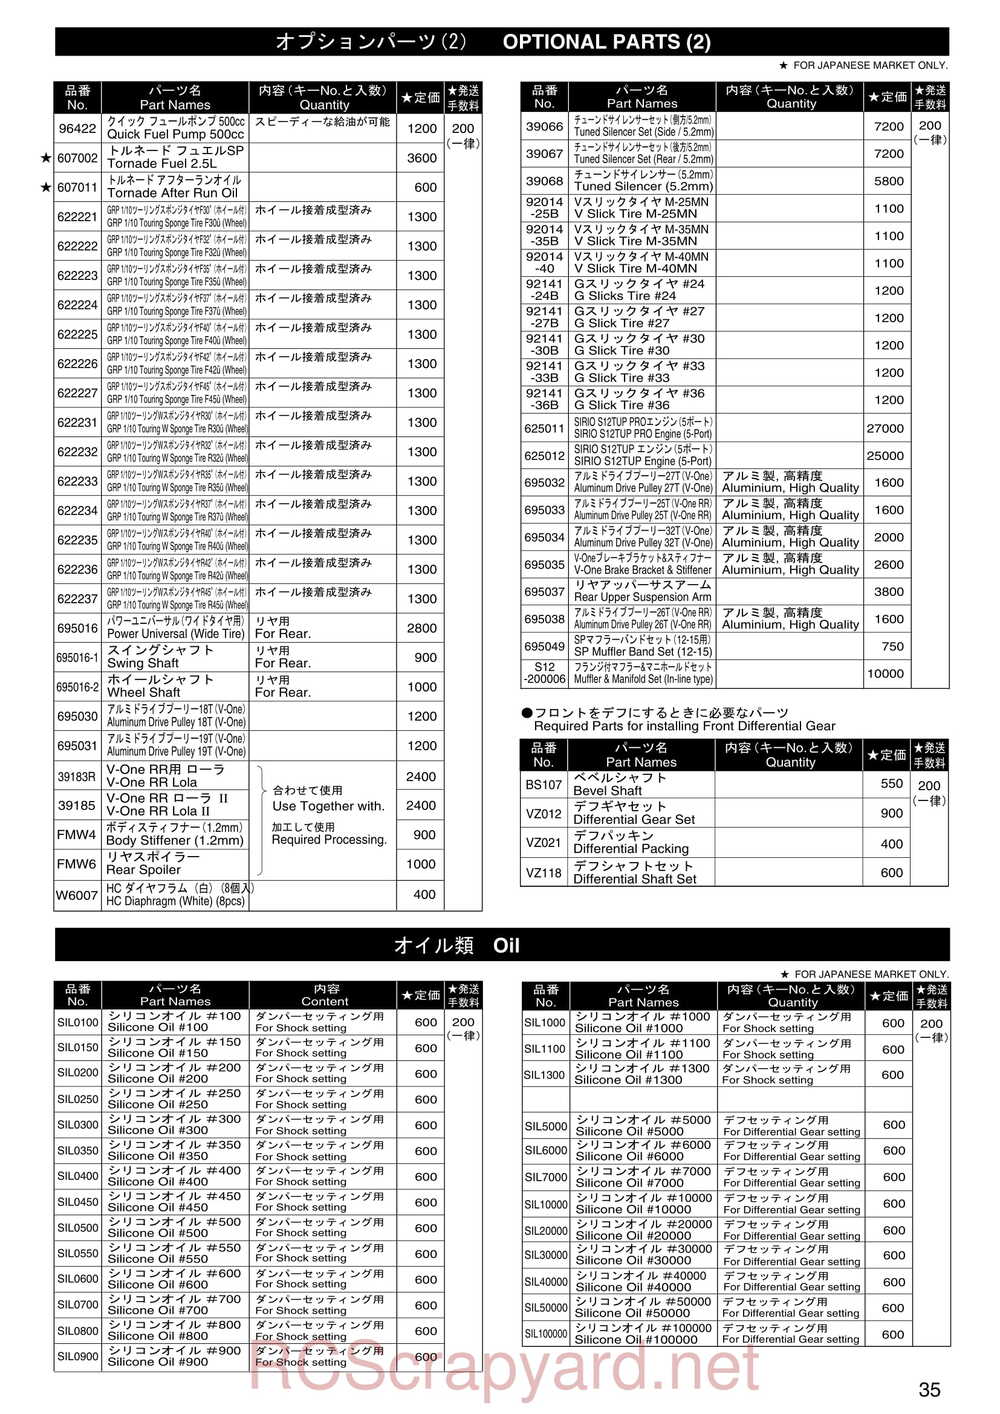 Kyosho - 31255 - V-One RR Evolution - Manual - Page 34